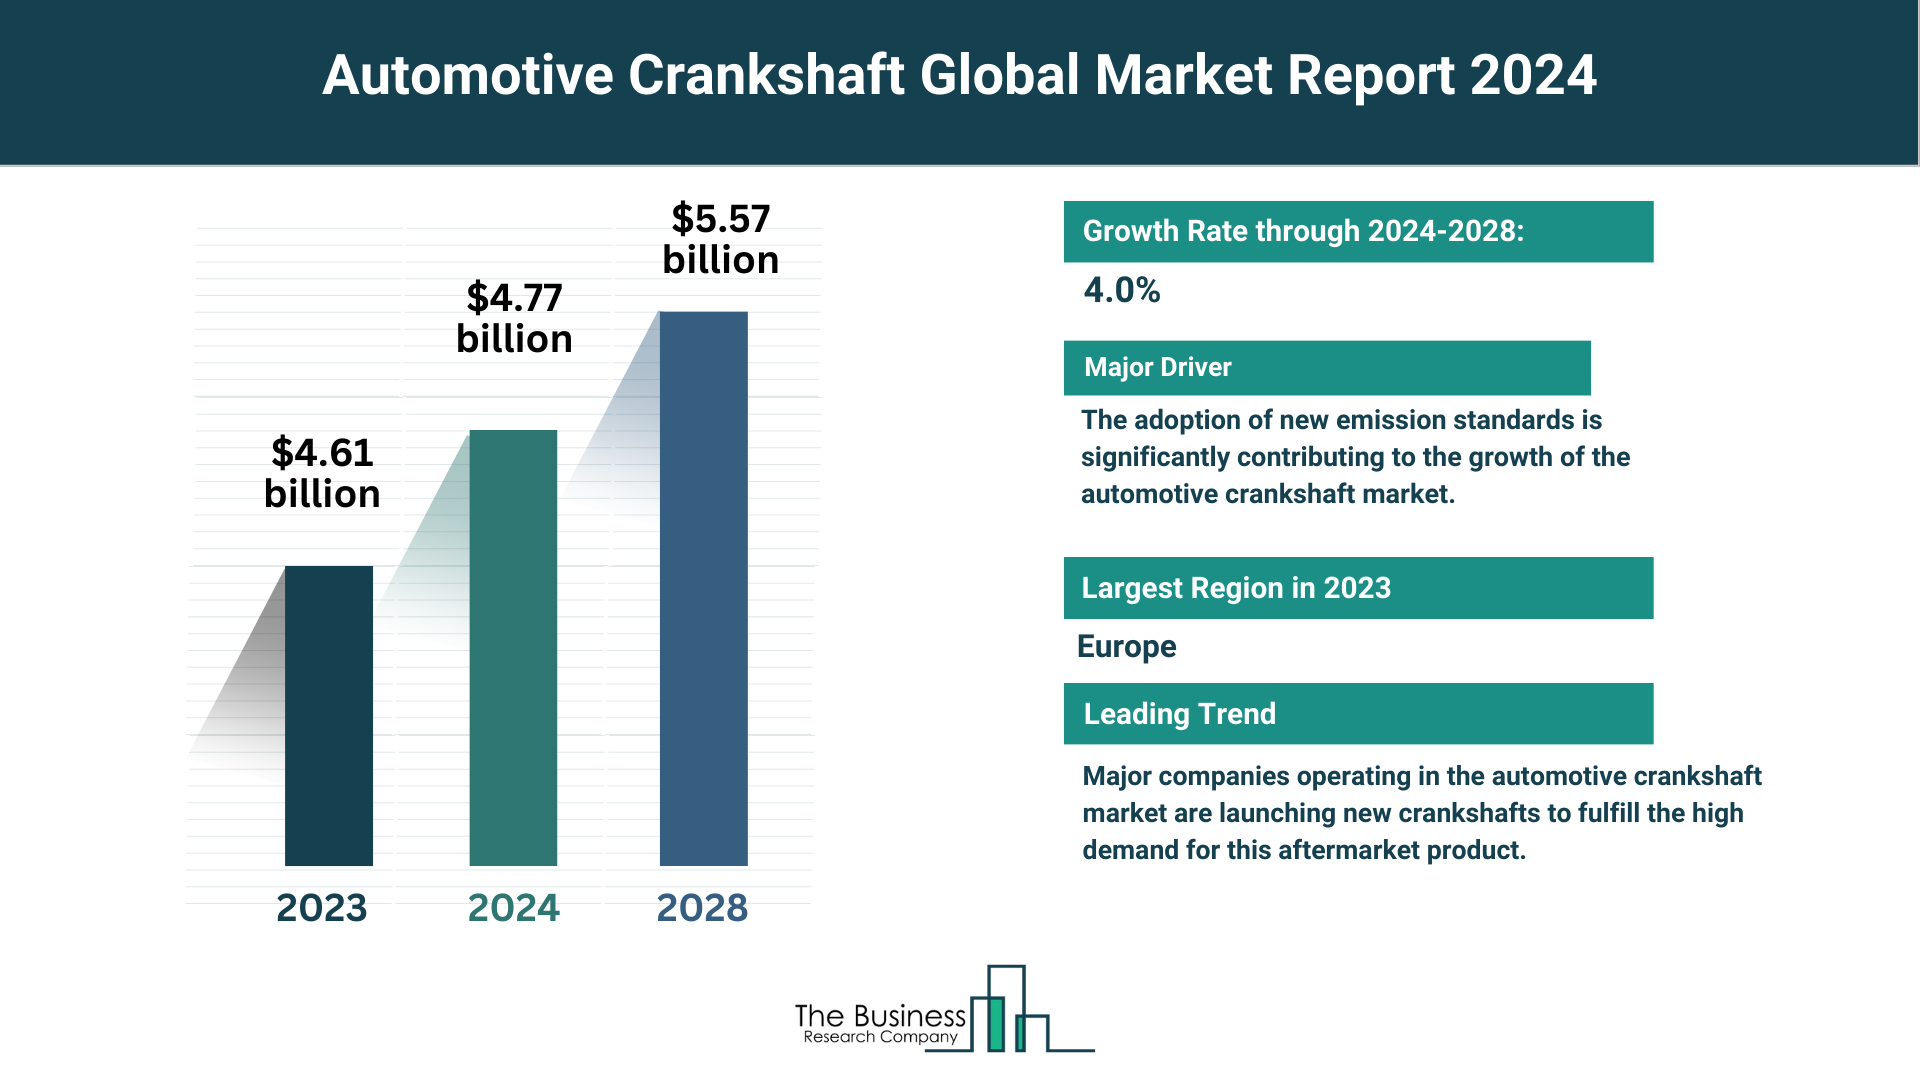 Global Automotive Crankshaft Market